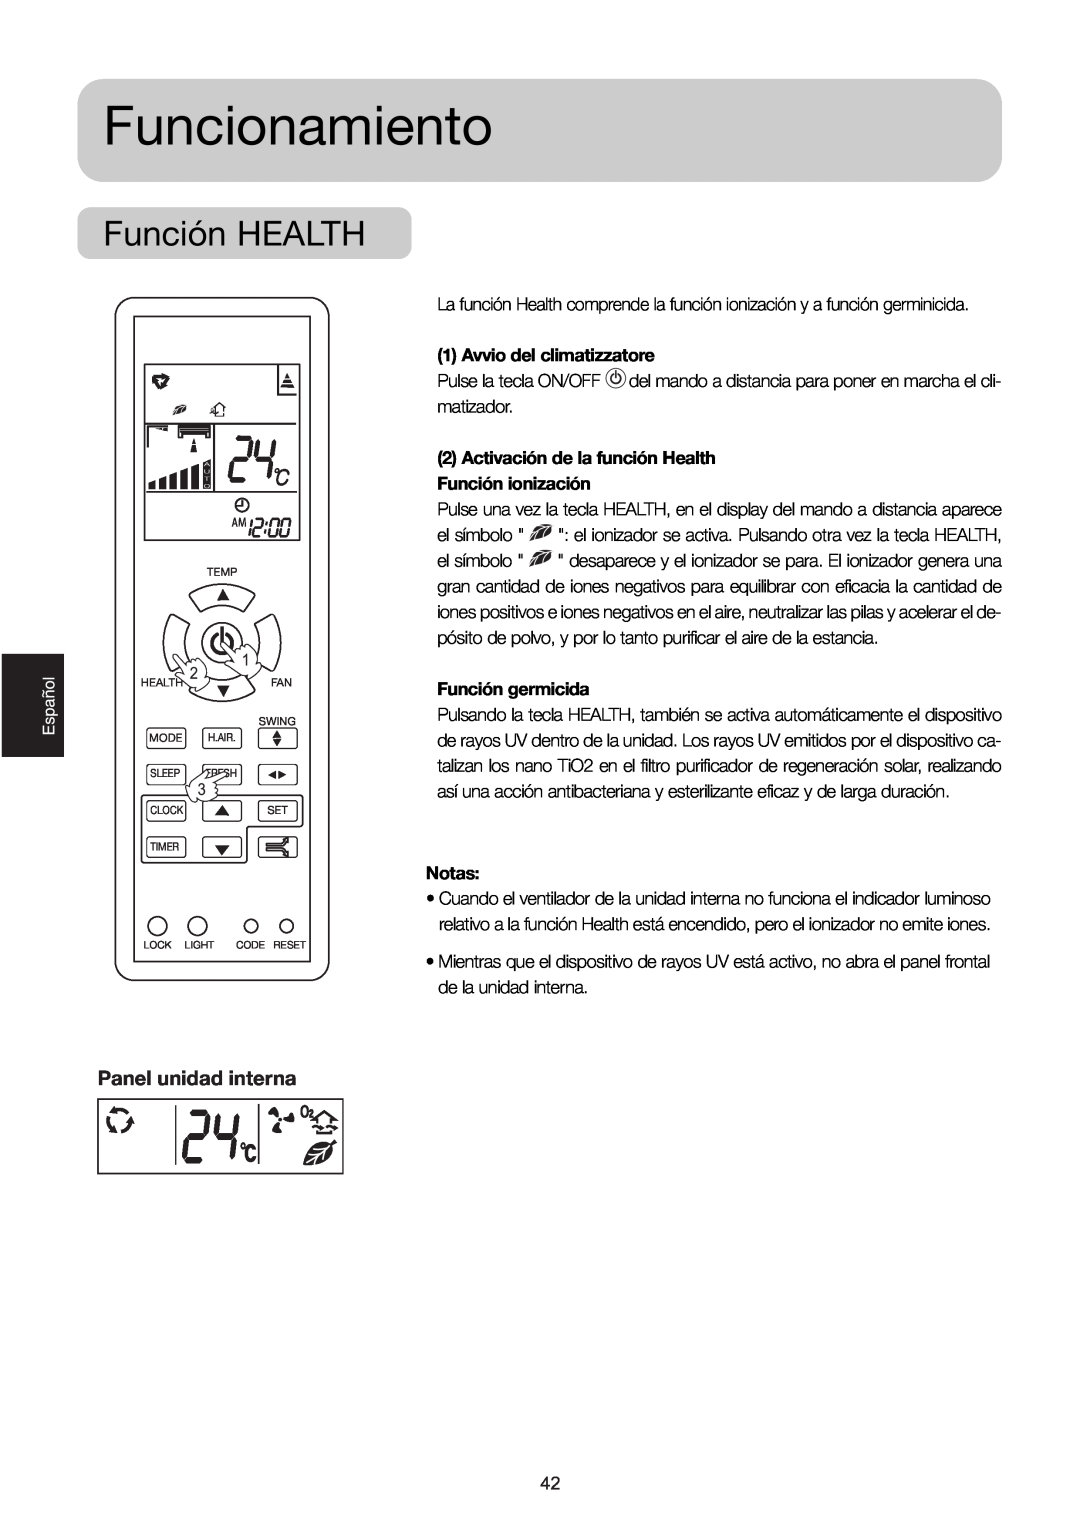 Haier HSM09RU03, HSM12RU03, 2HUM18R03 manual Función HEALTH, Funcionamiento, Panel unidad interna, Avvio del climatizzatore 